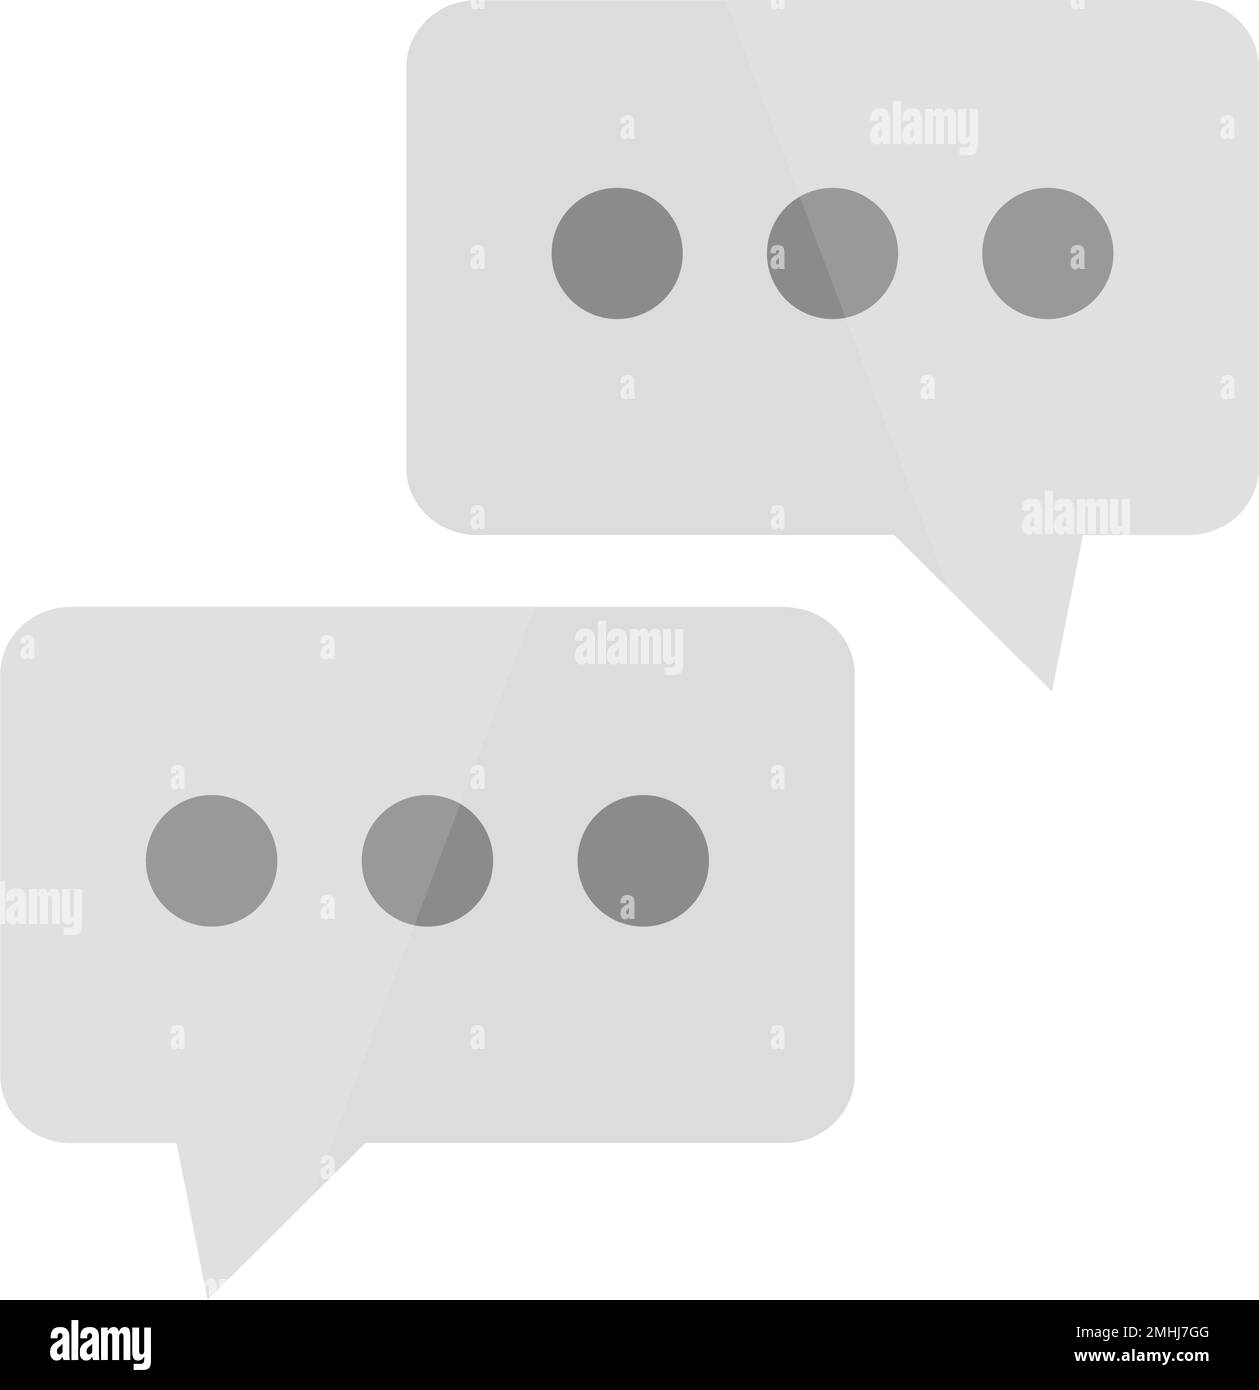 Conversation Icon. Dialogue. two speech bubble icons. Editable vector. Stock Vector